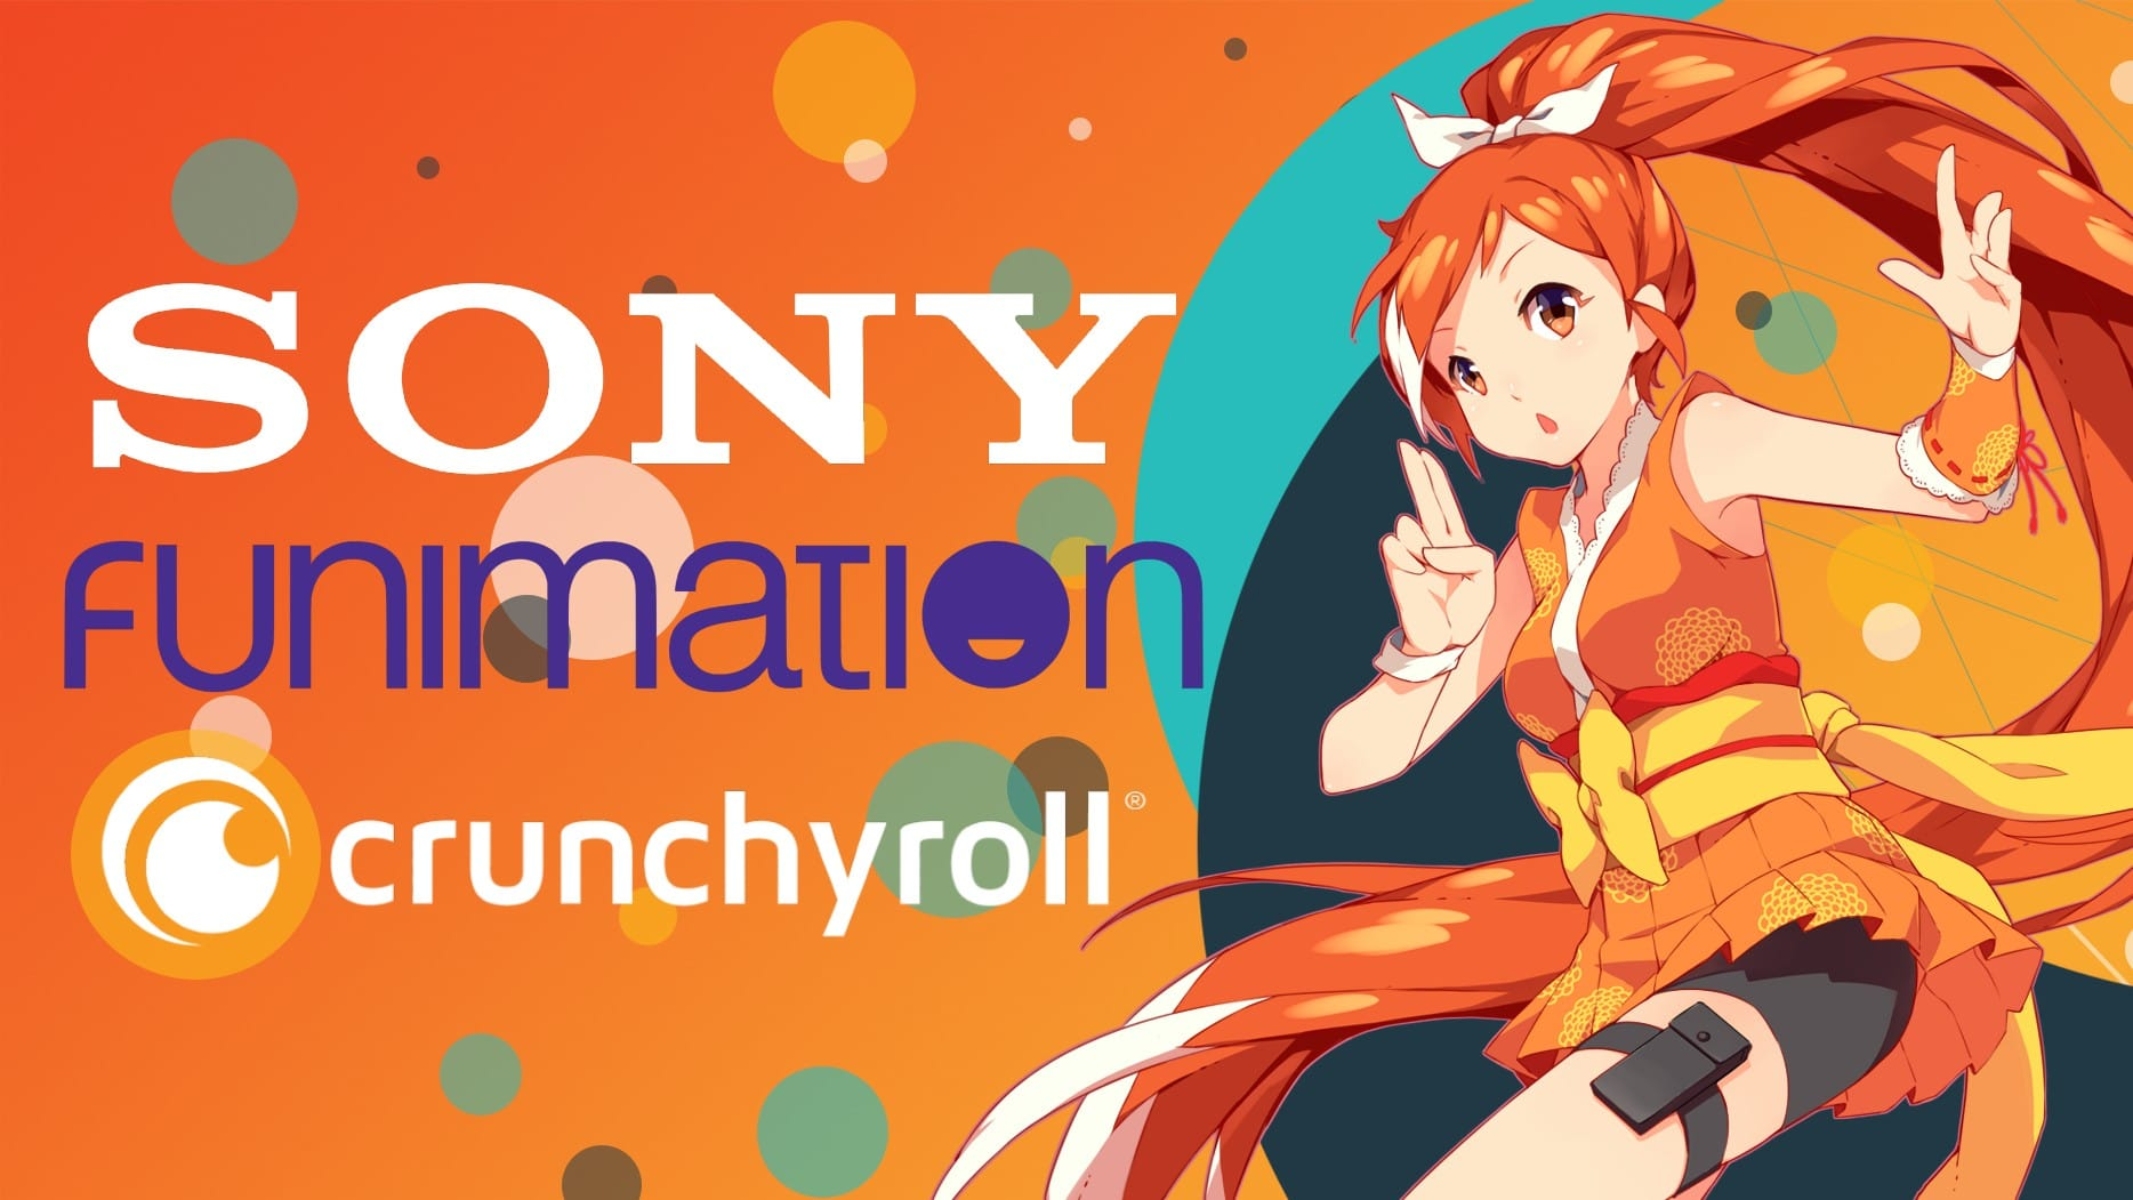 Sony-Funimation-Crunchyroll